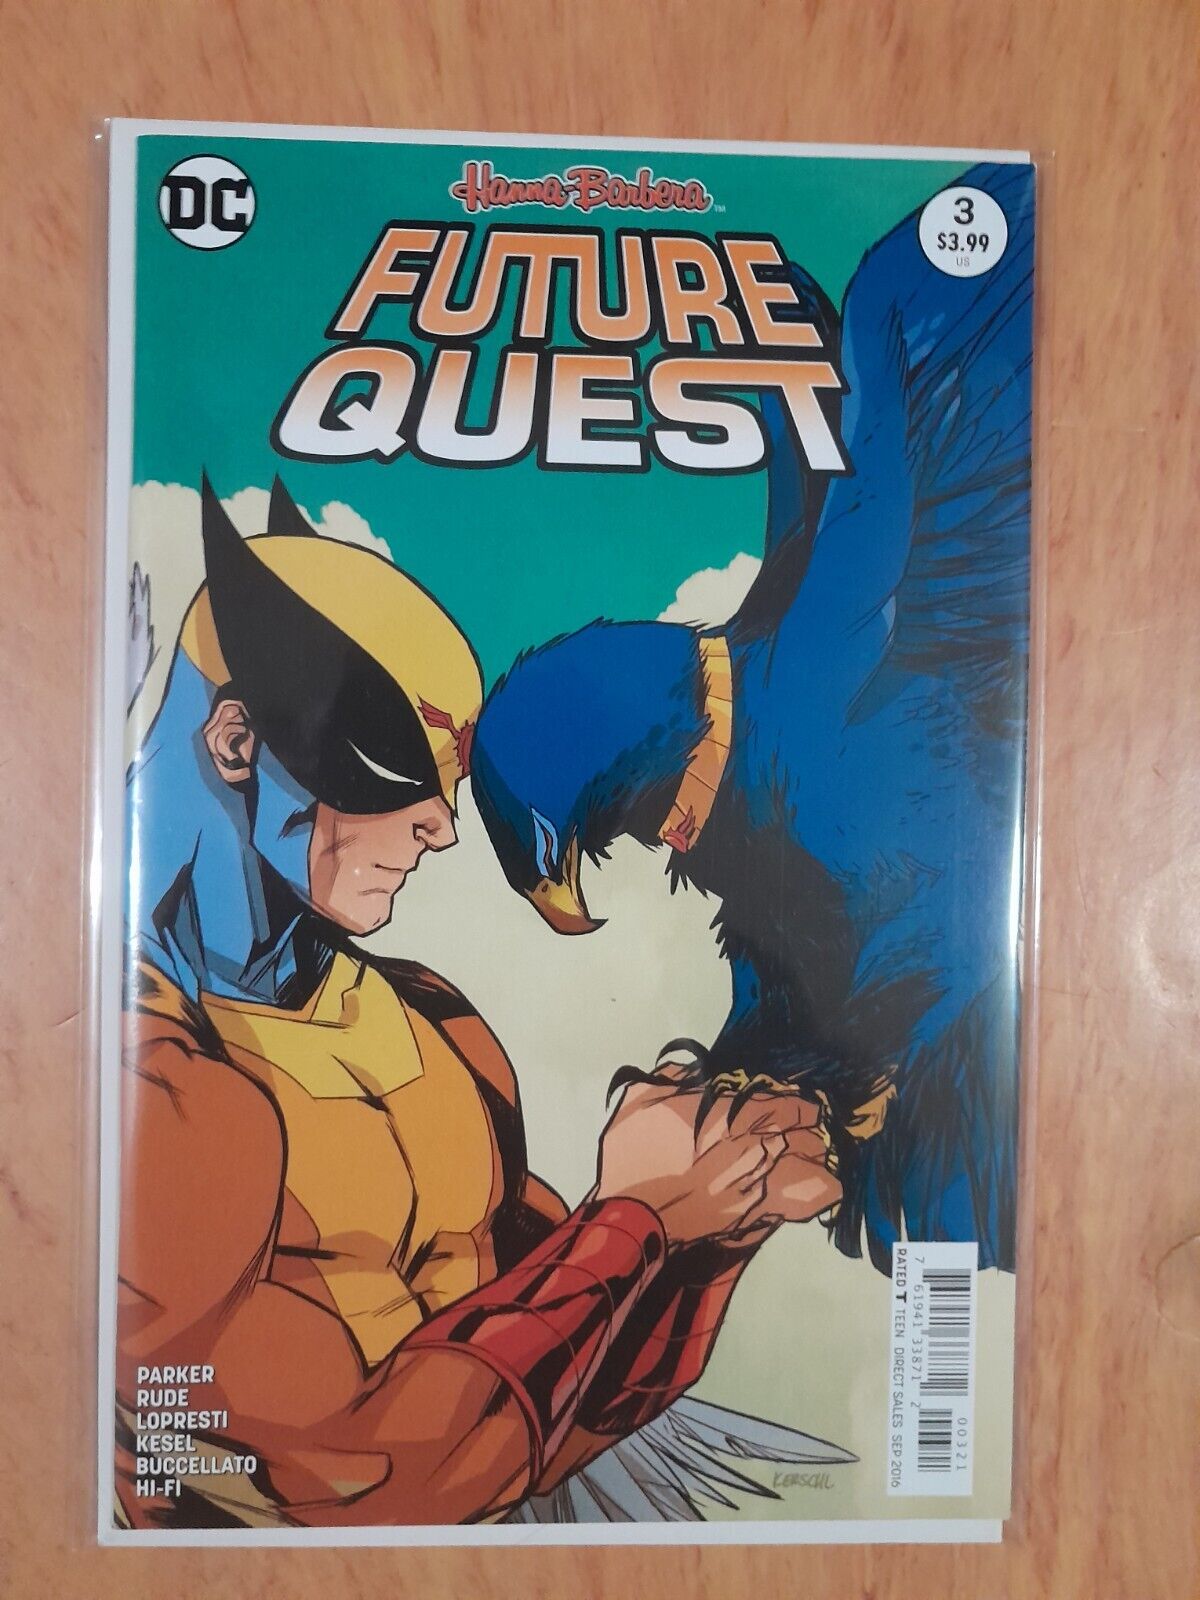 FUTURE QUEST #3 (DC Comics, September 2016) BIRD MAN